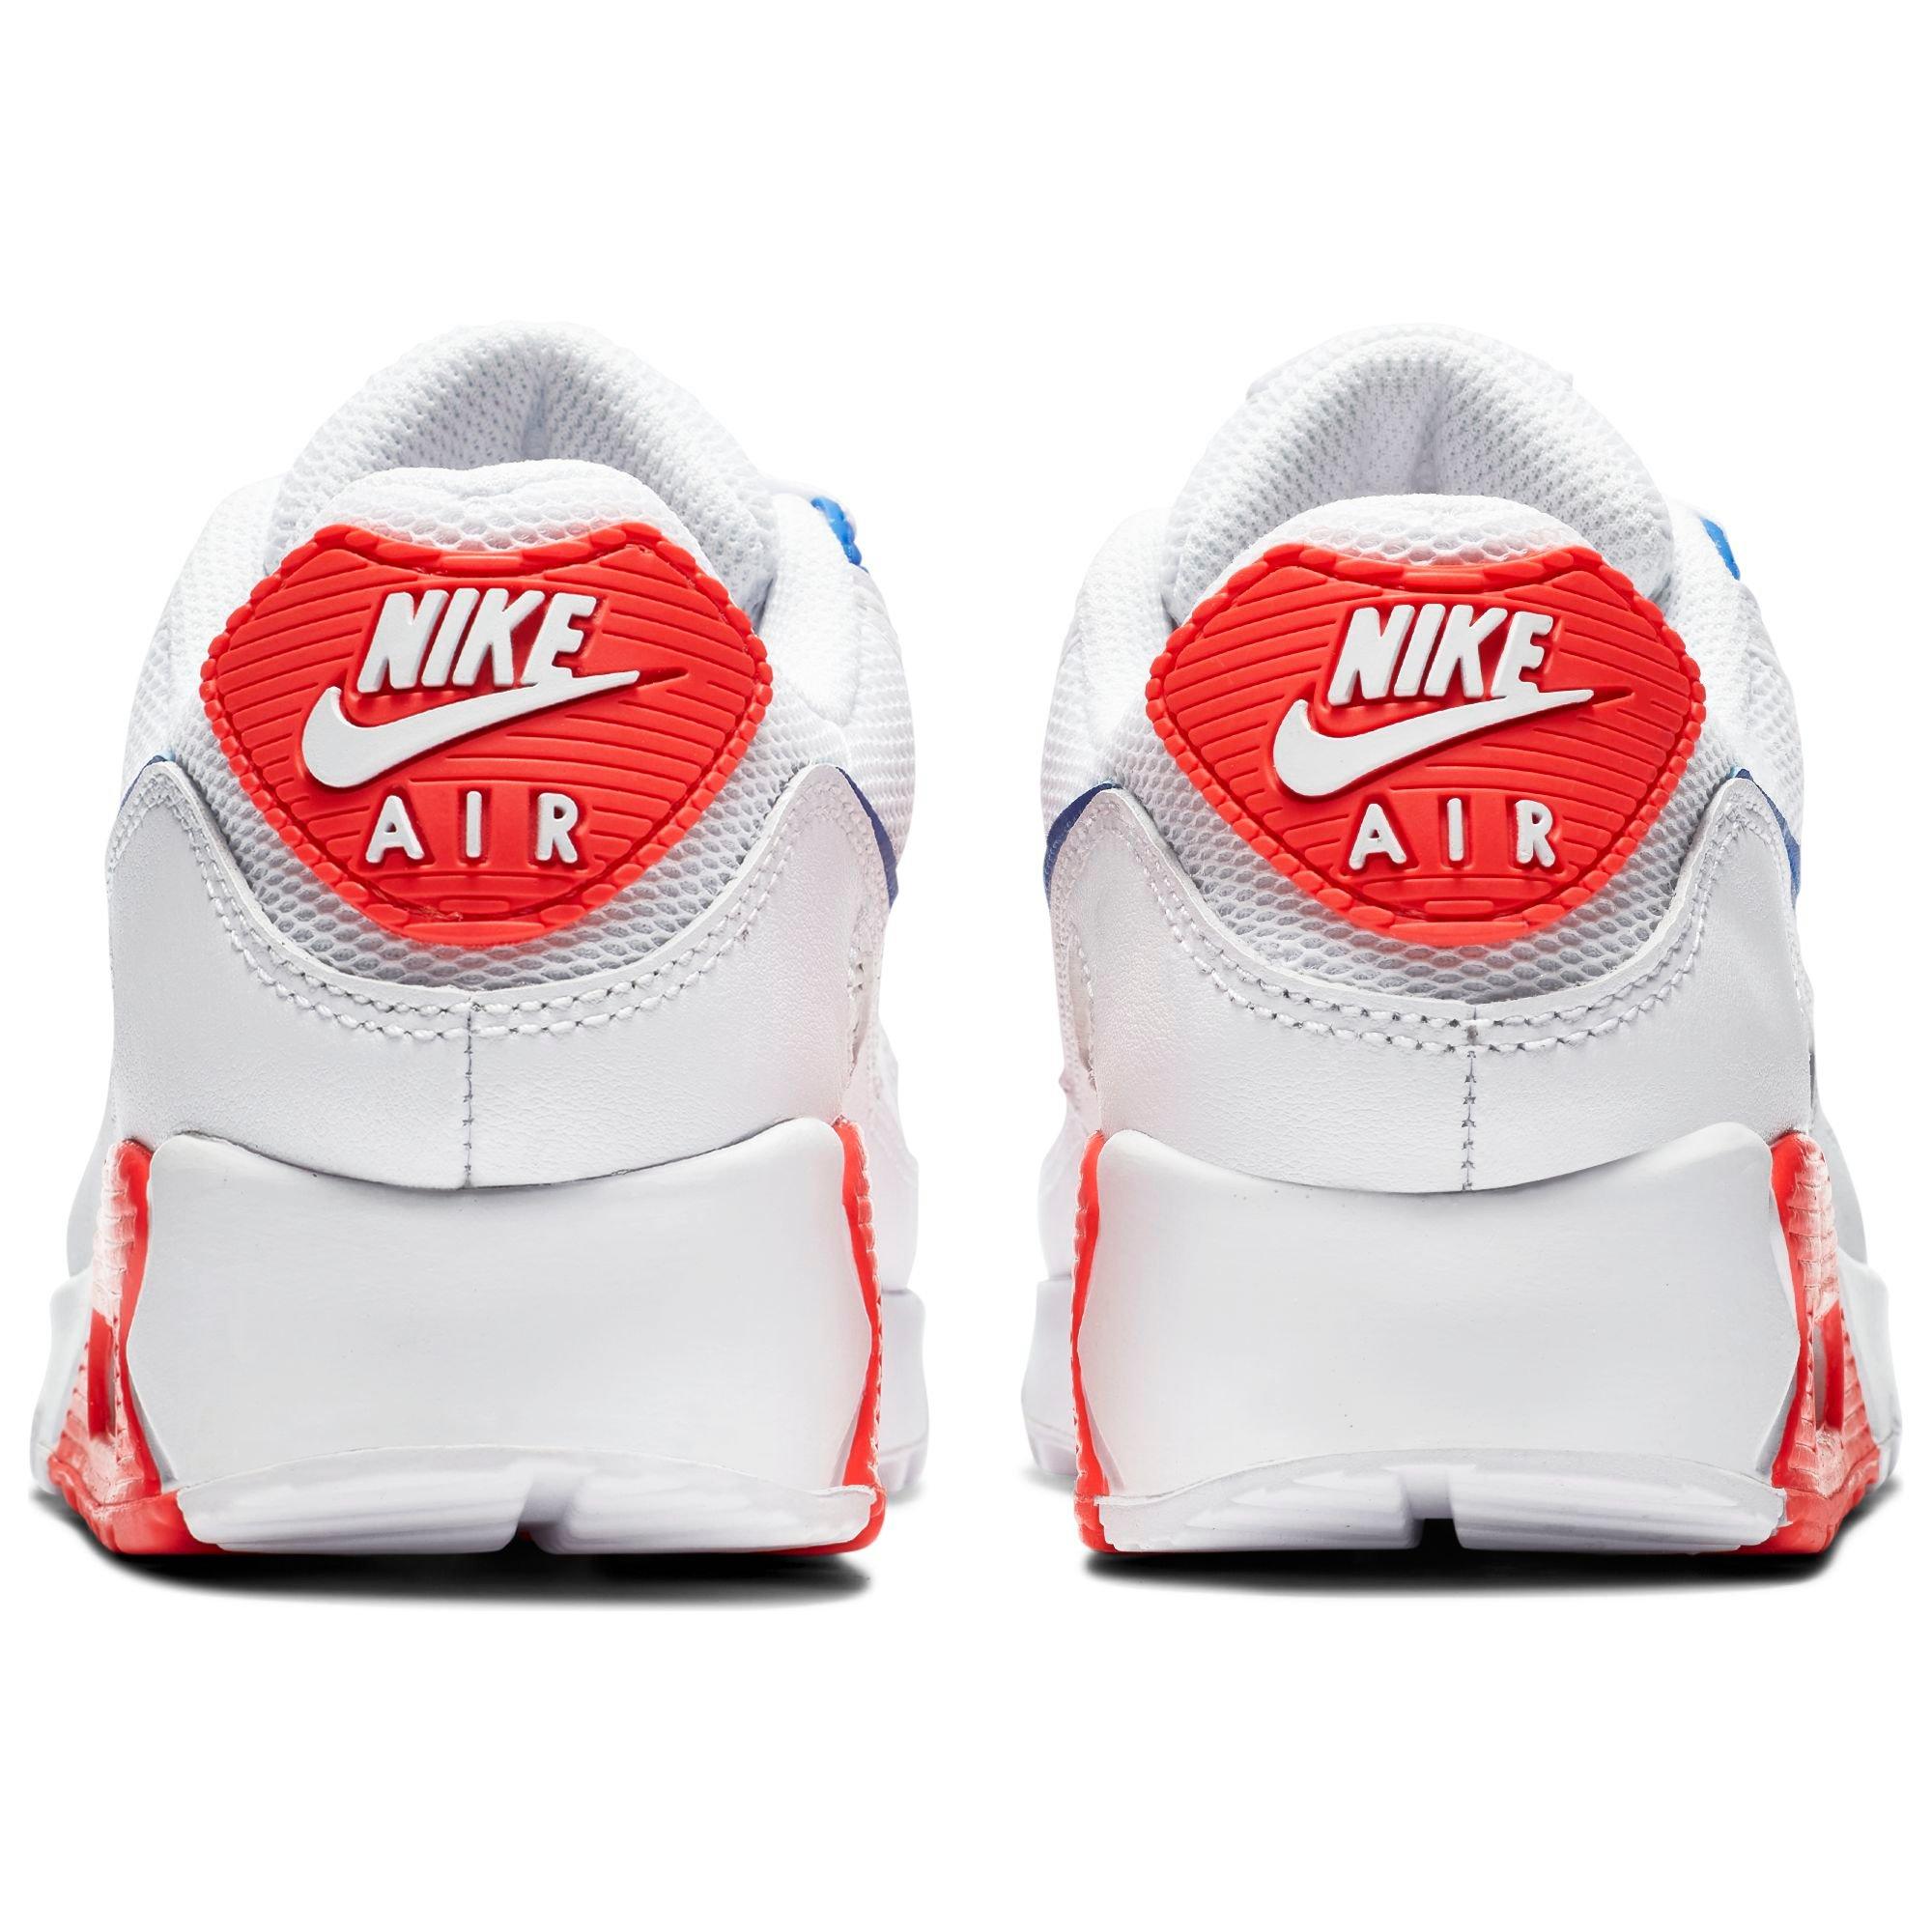 Найк аир модели. Nike Air Max 90 Red White. Nike Air Max 90 расцветки. Nike Air Max Classic. Nike Air Max 99.